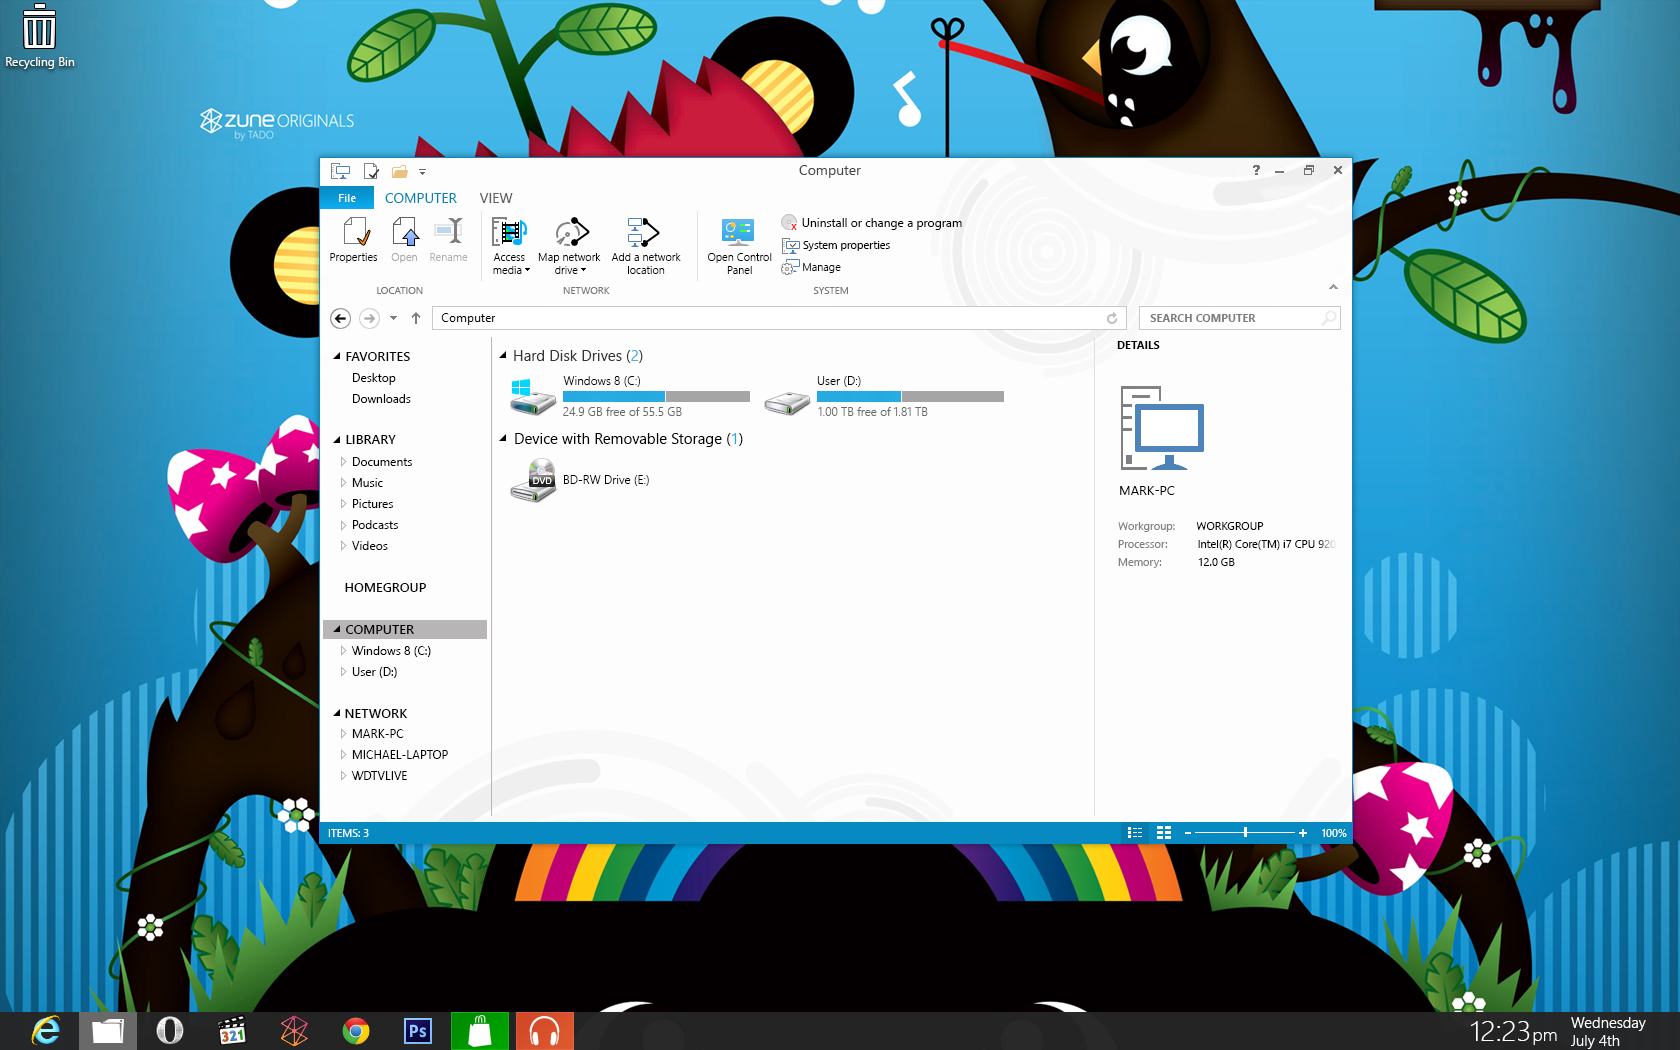 windows_8_desktop_concept_by_myownfriend-d56lqg4.png